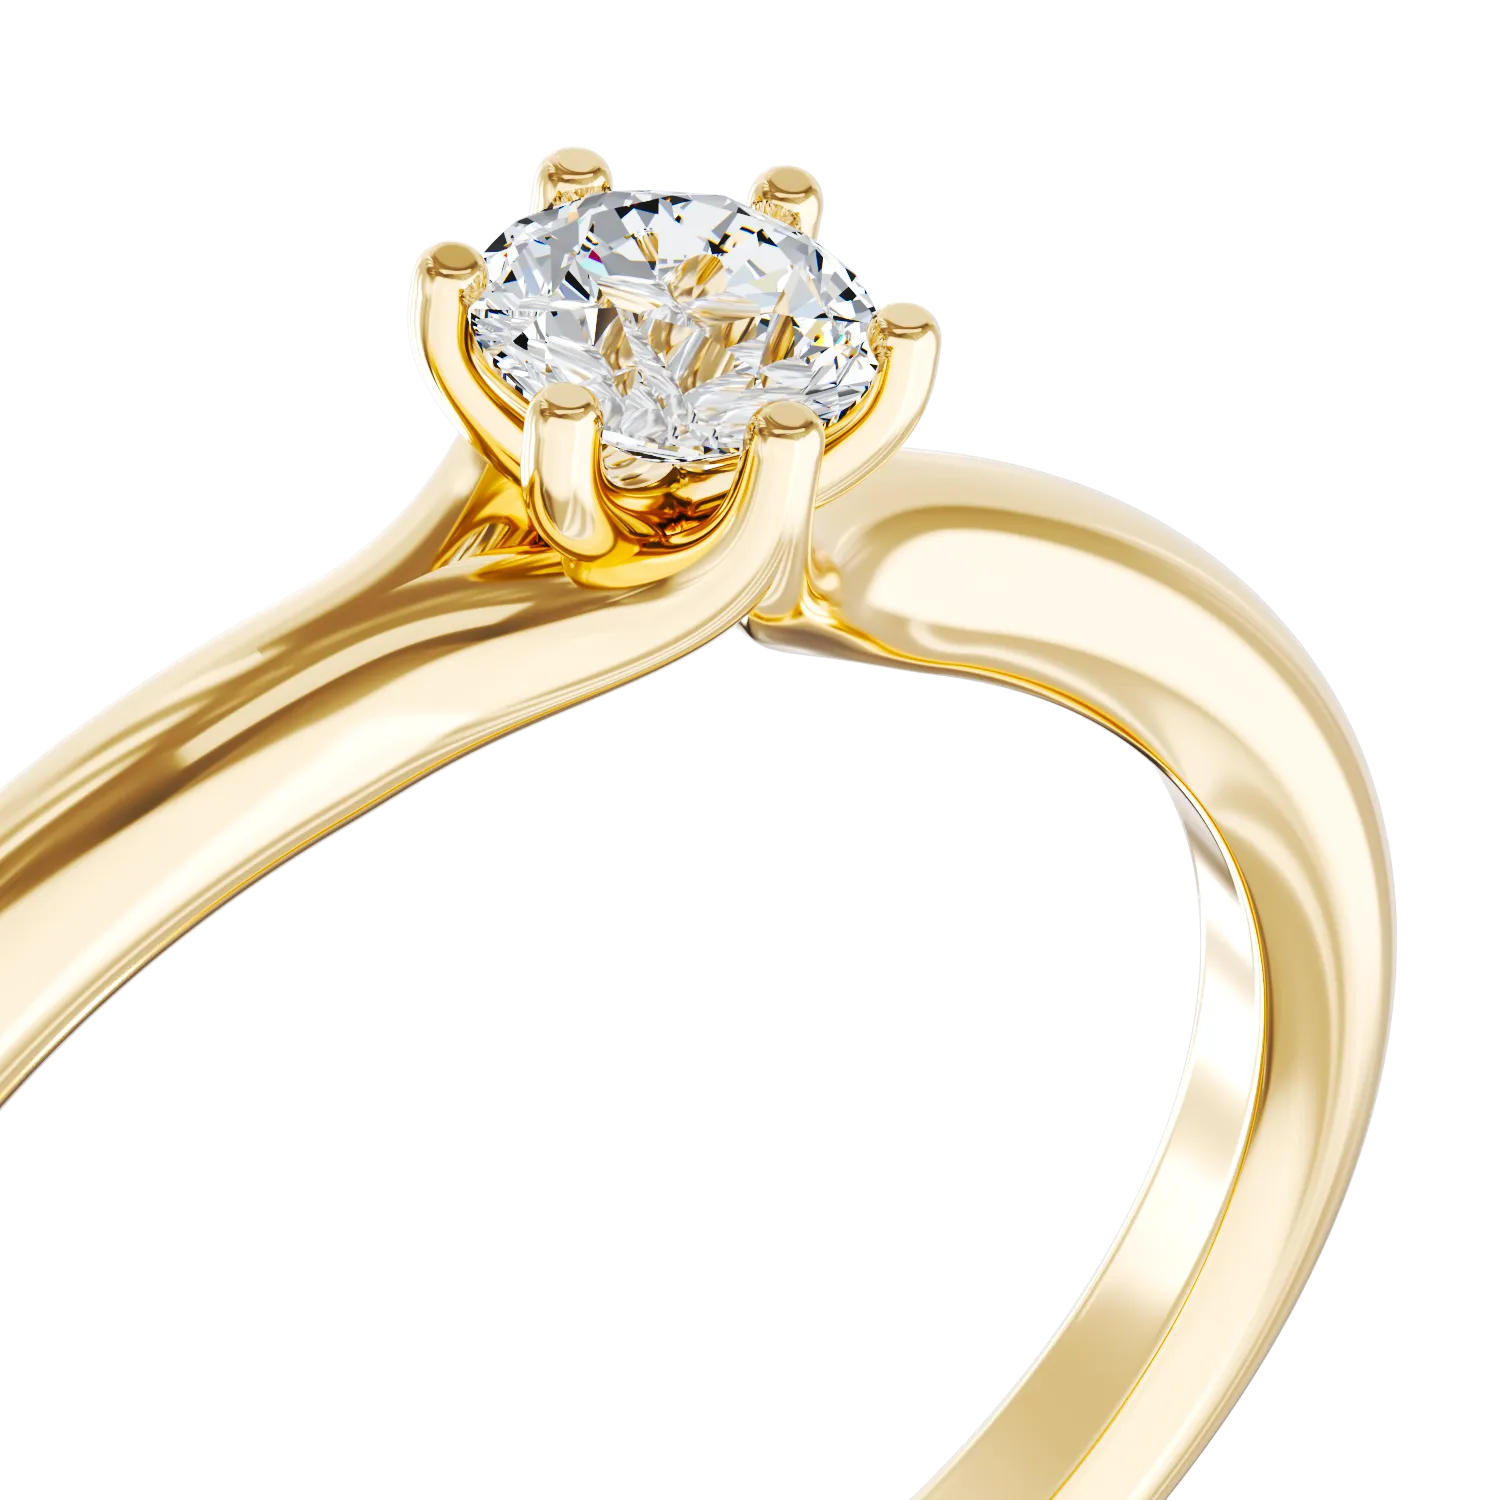 Годежен пръстен от 18K жълто злато с диамант пасианс 0.14ct